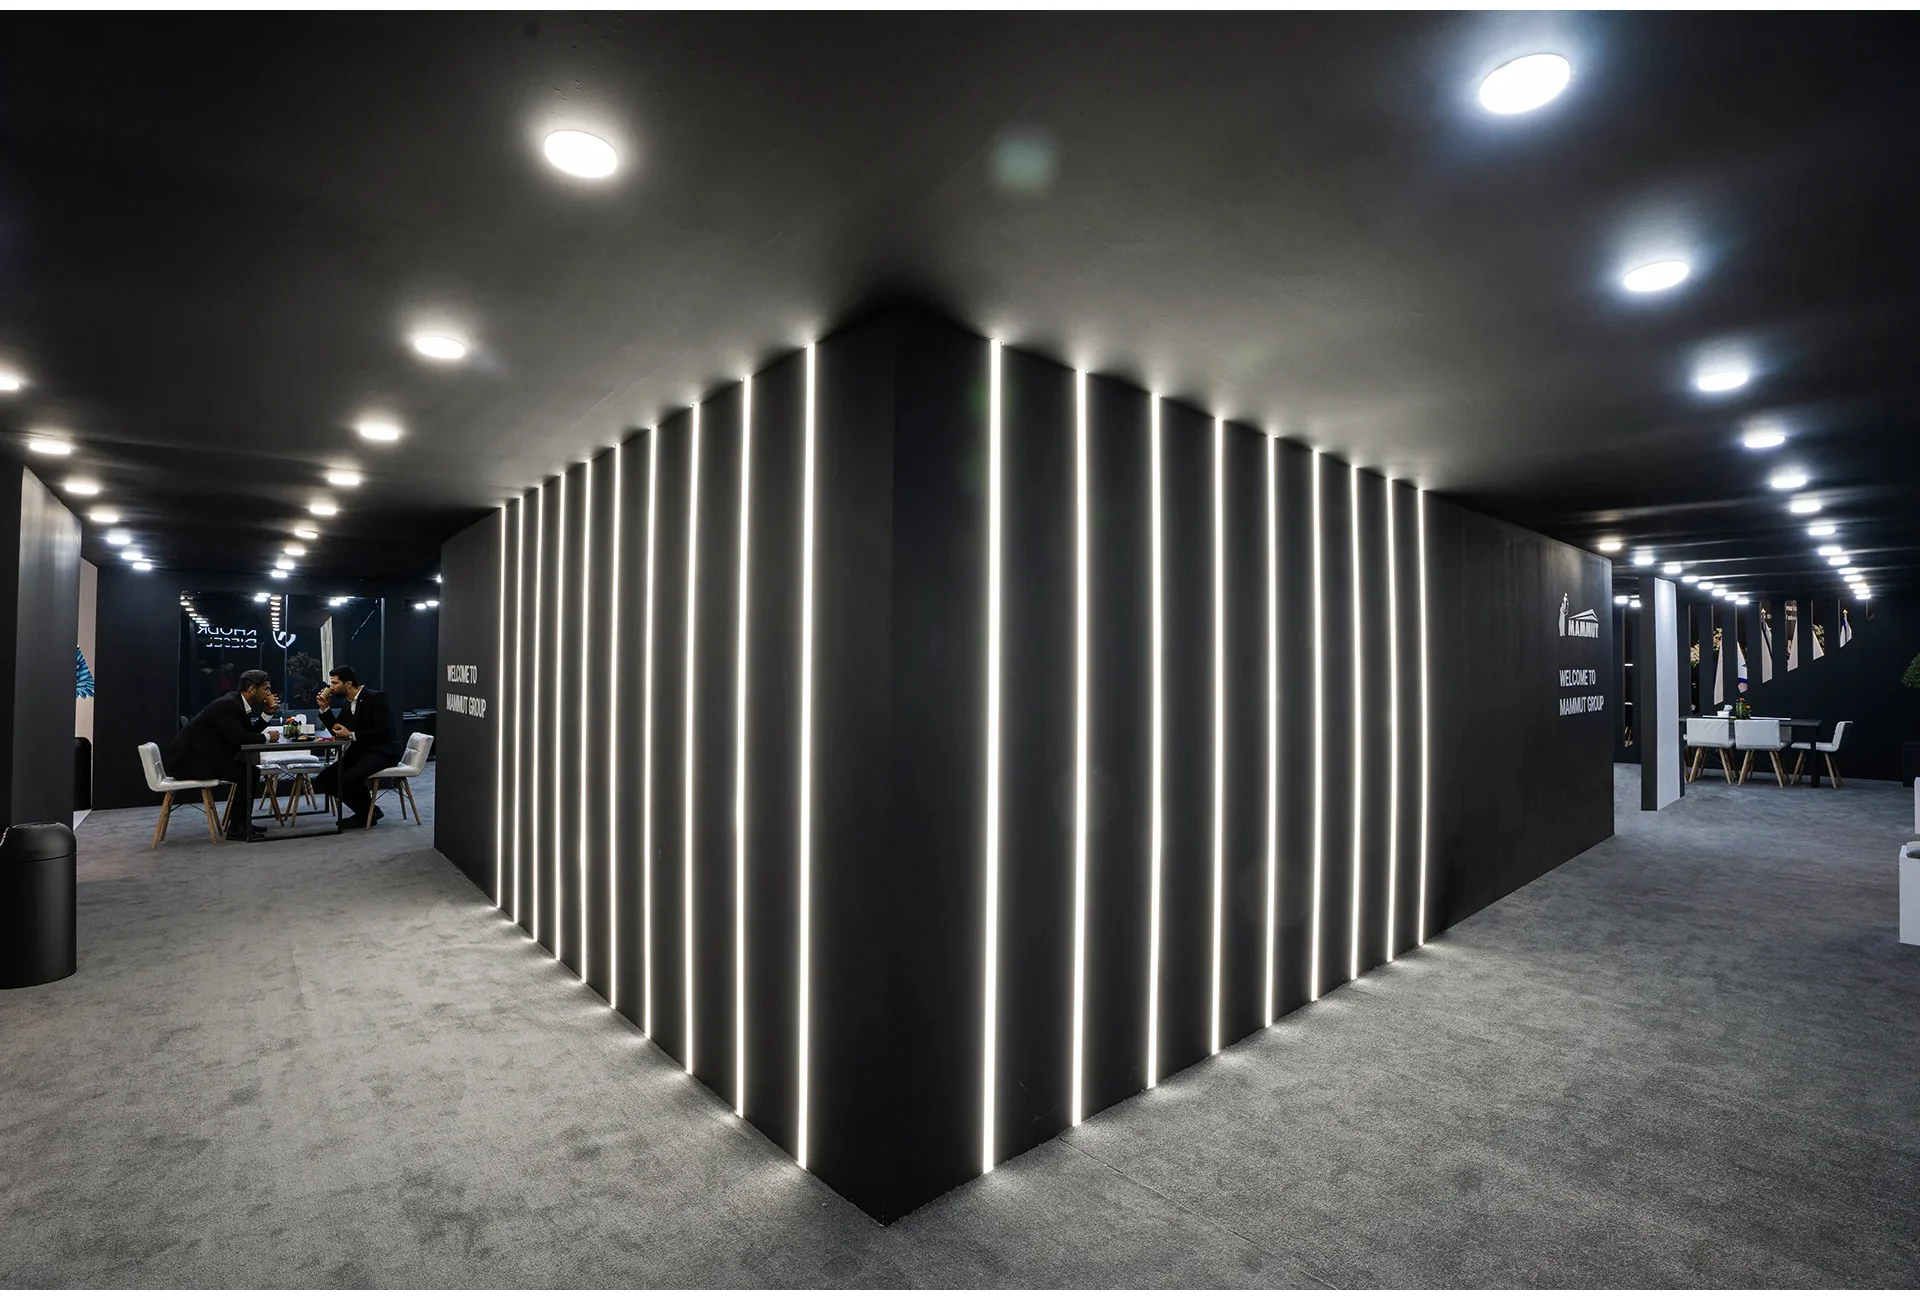   23 طراحی غرفه و غرفه سازی نمایشگاهی هولدینگ ماموت شرکت غرفه سازی آمیتیس 